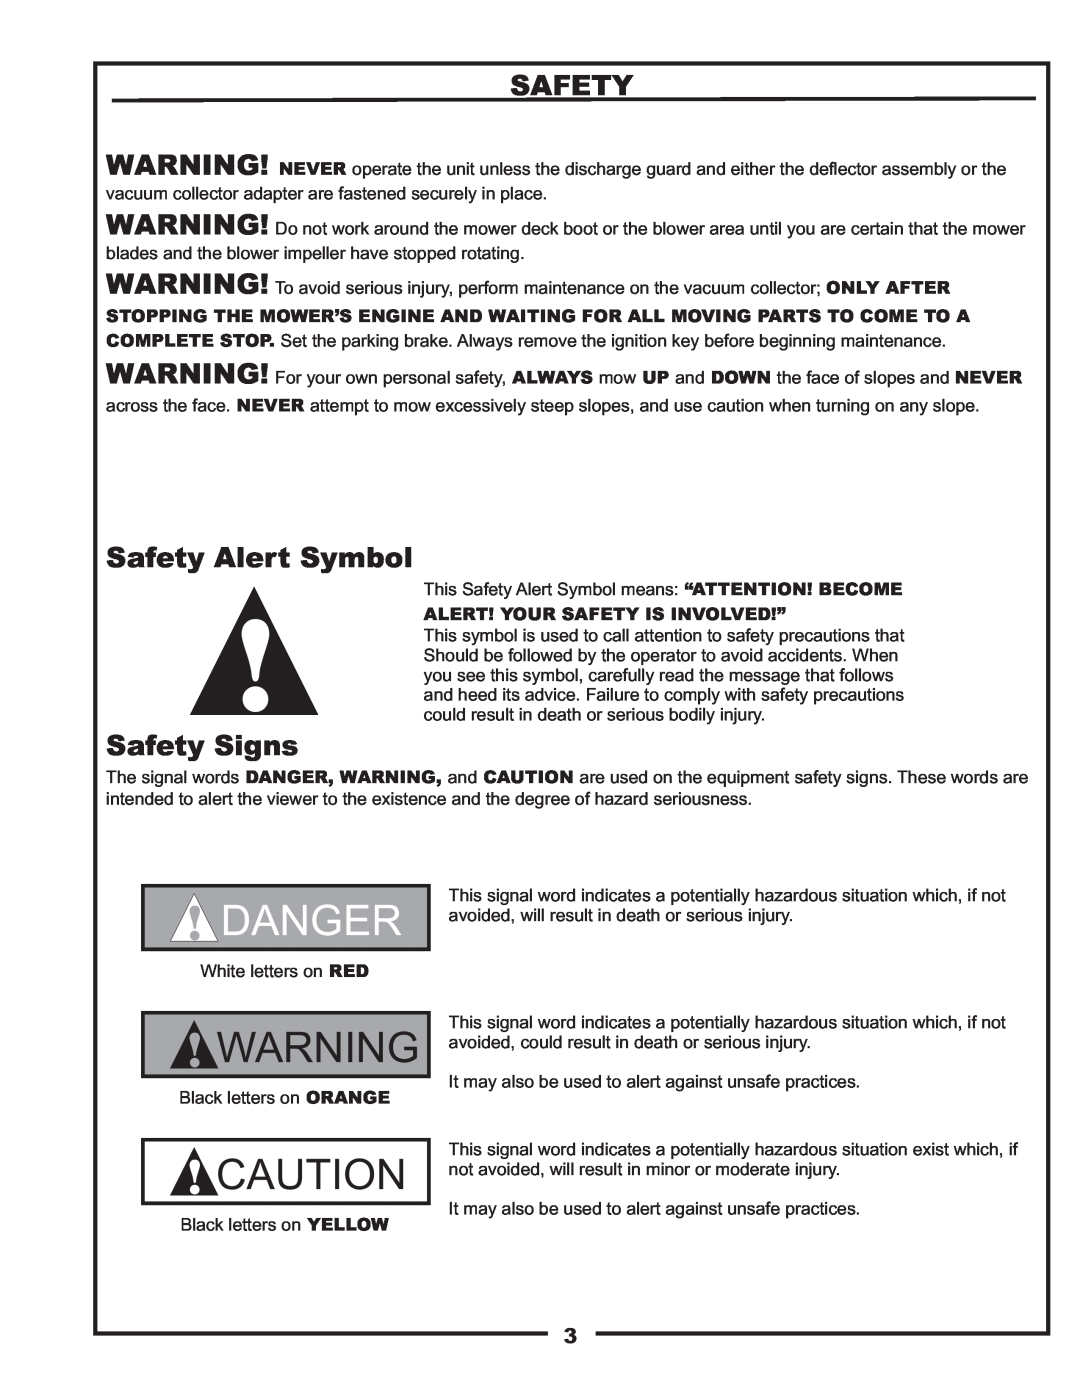 Gravely 12621209-12 manual Safety Alert Symbol, Safety Signs, Danger 